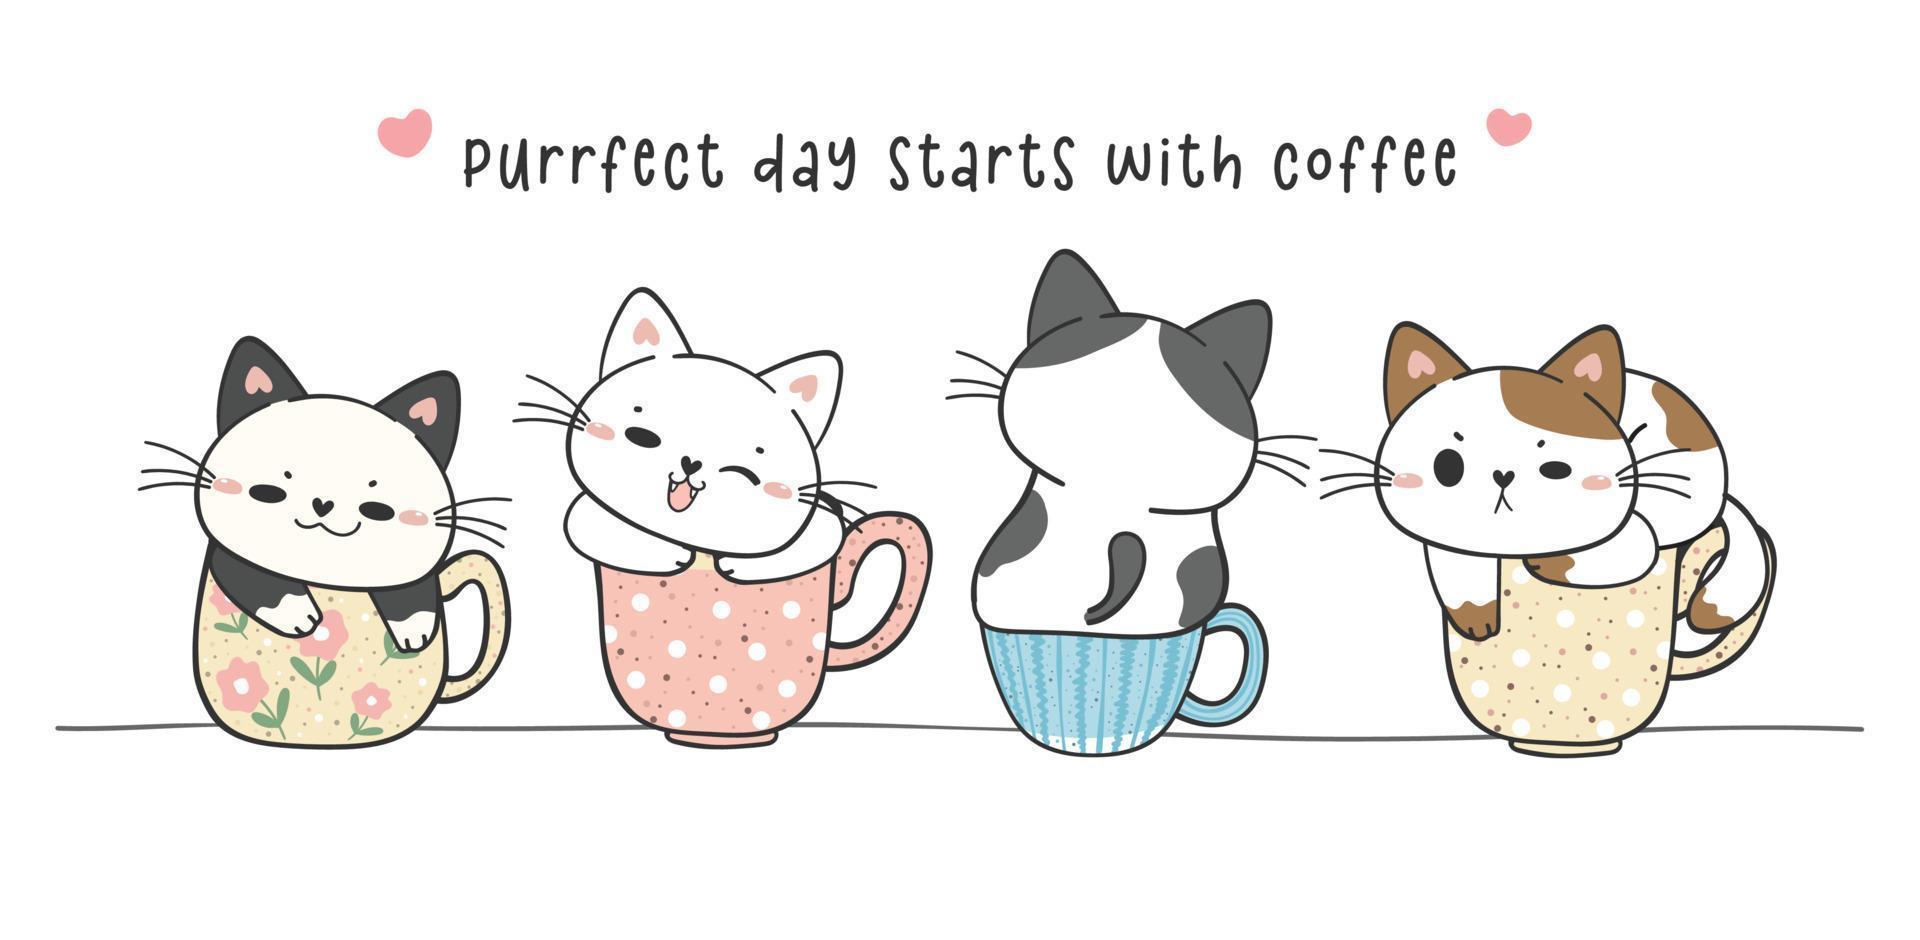 groupe de chats chatons drôles mignons assis sur une tasse à café collection de tasses, journée parfaite avec café, adorable animal de compagnie dessin à la main vecteur de doodle